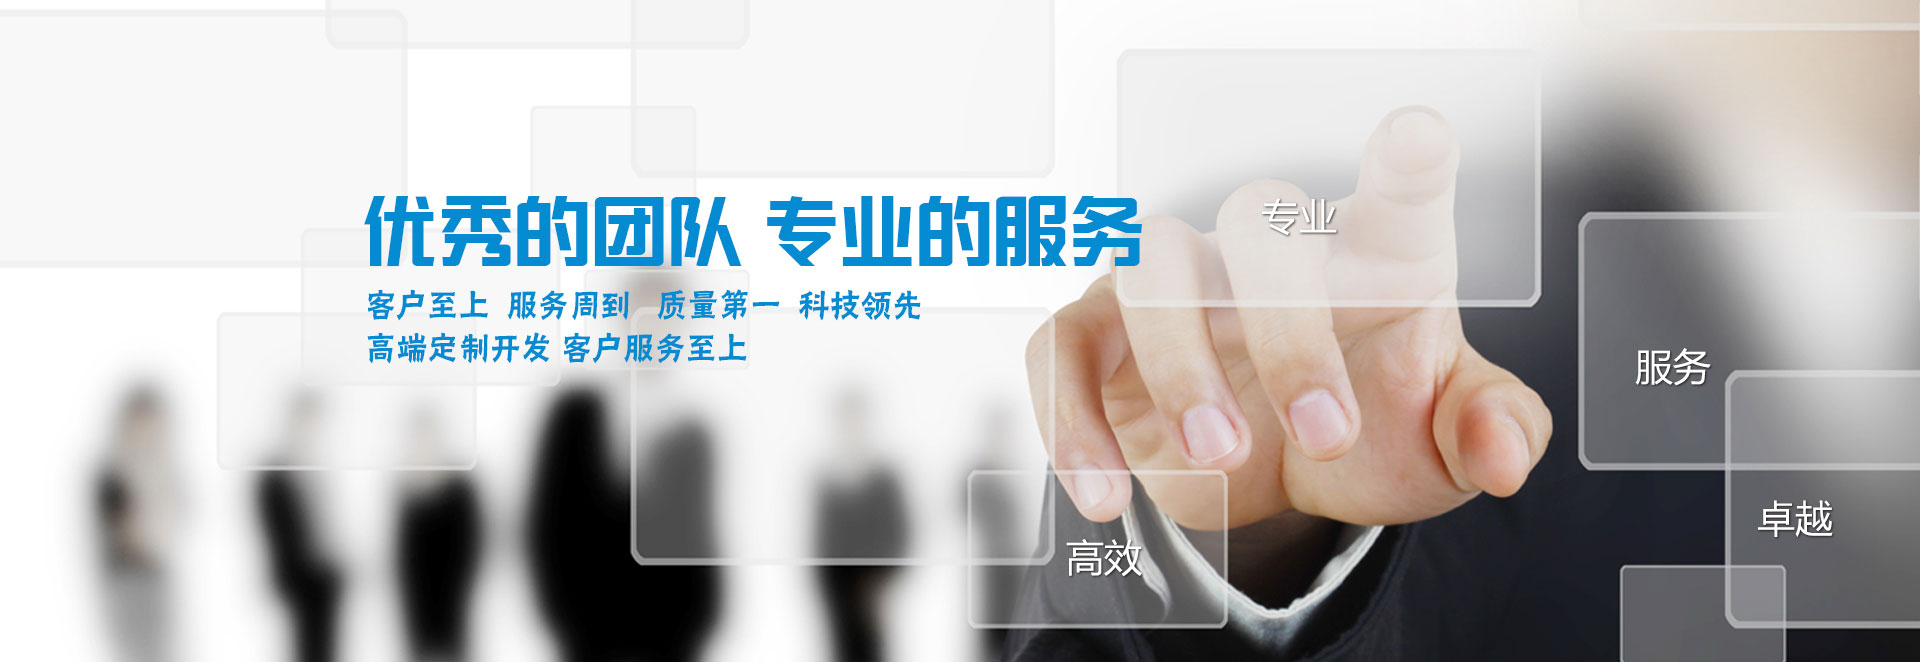 ob体育·(中国)官方网站-IOS版/安卓版/手机版APP下载
